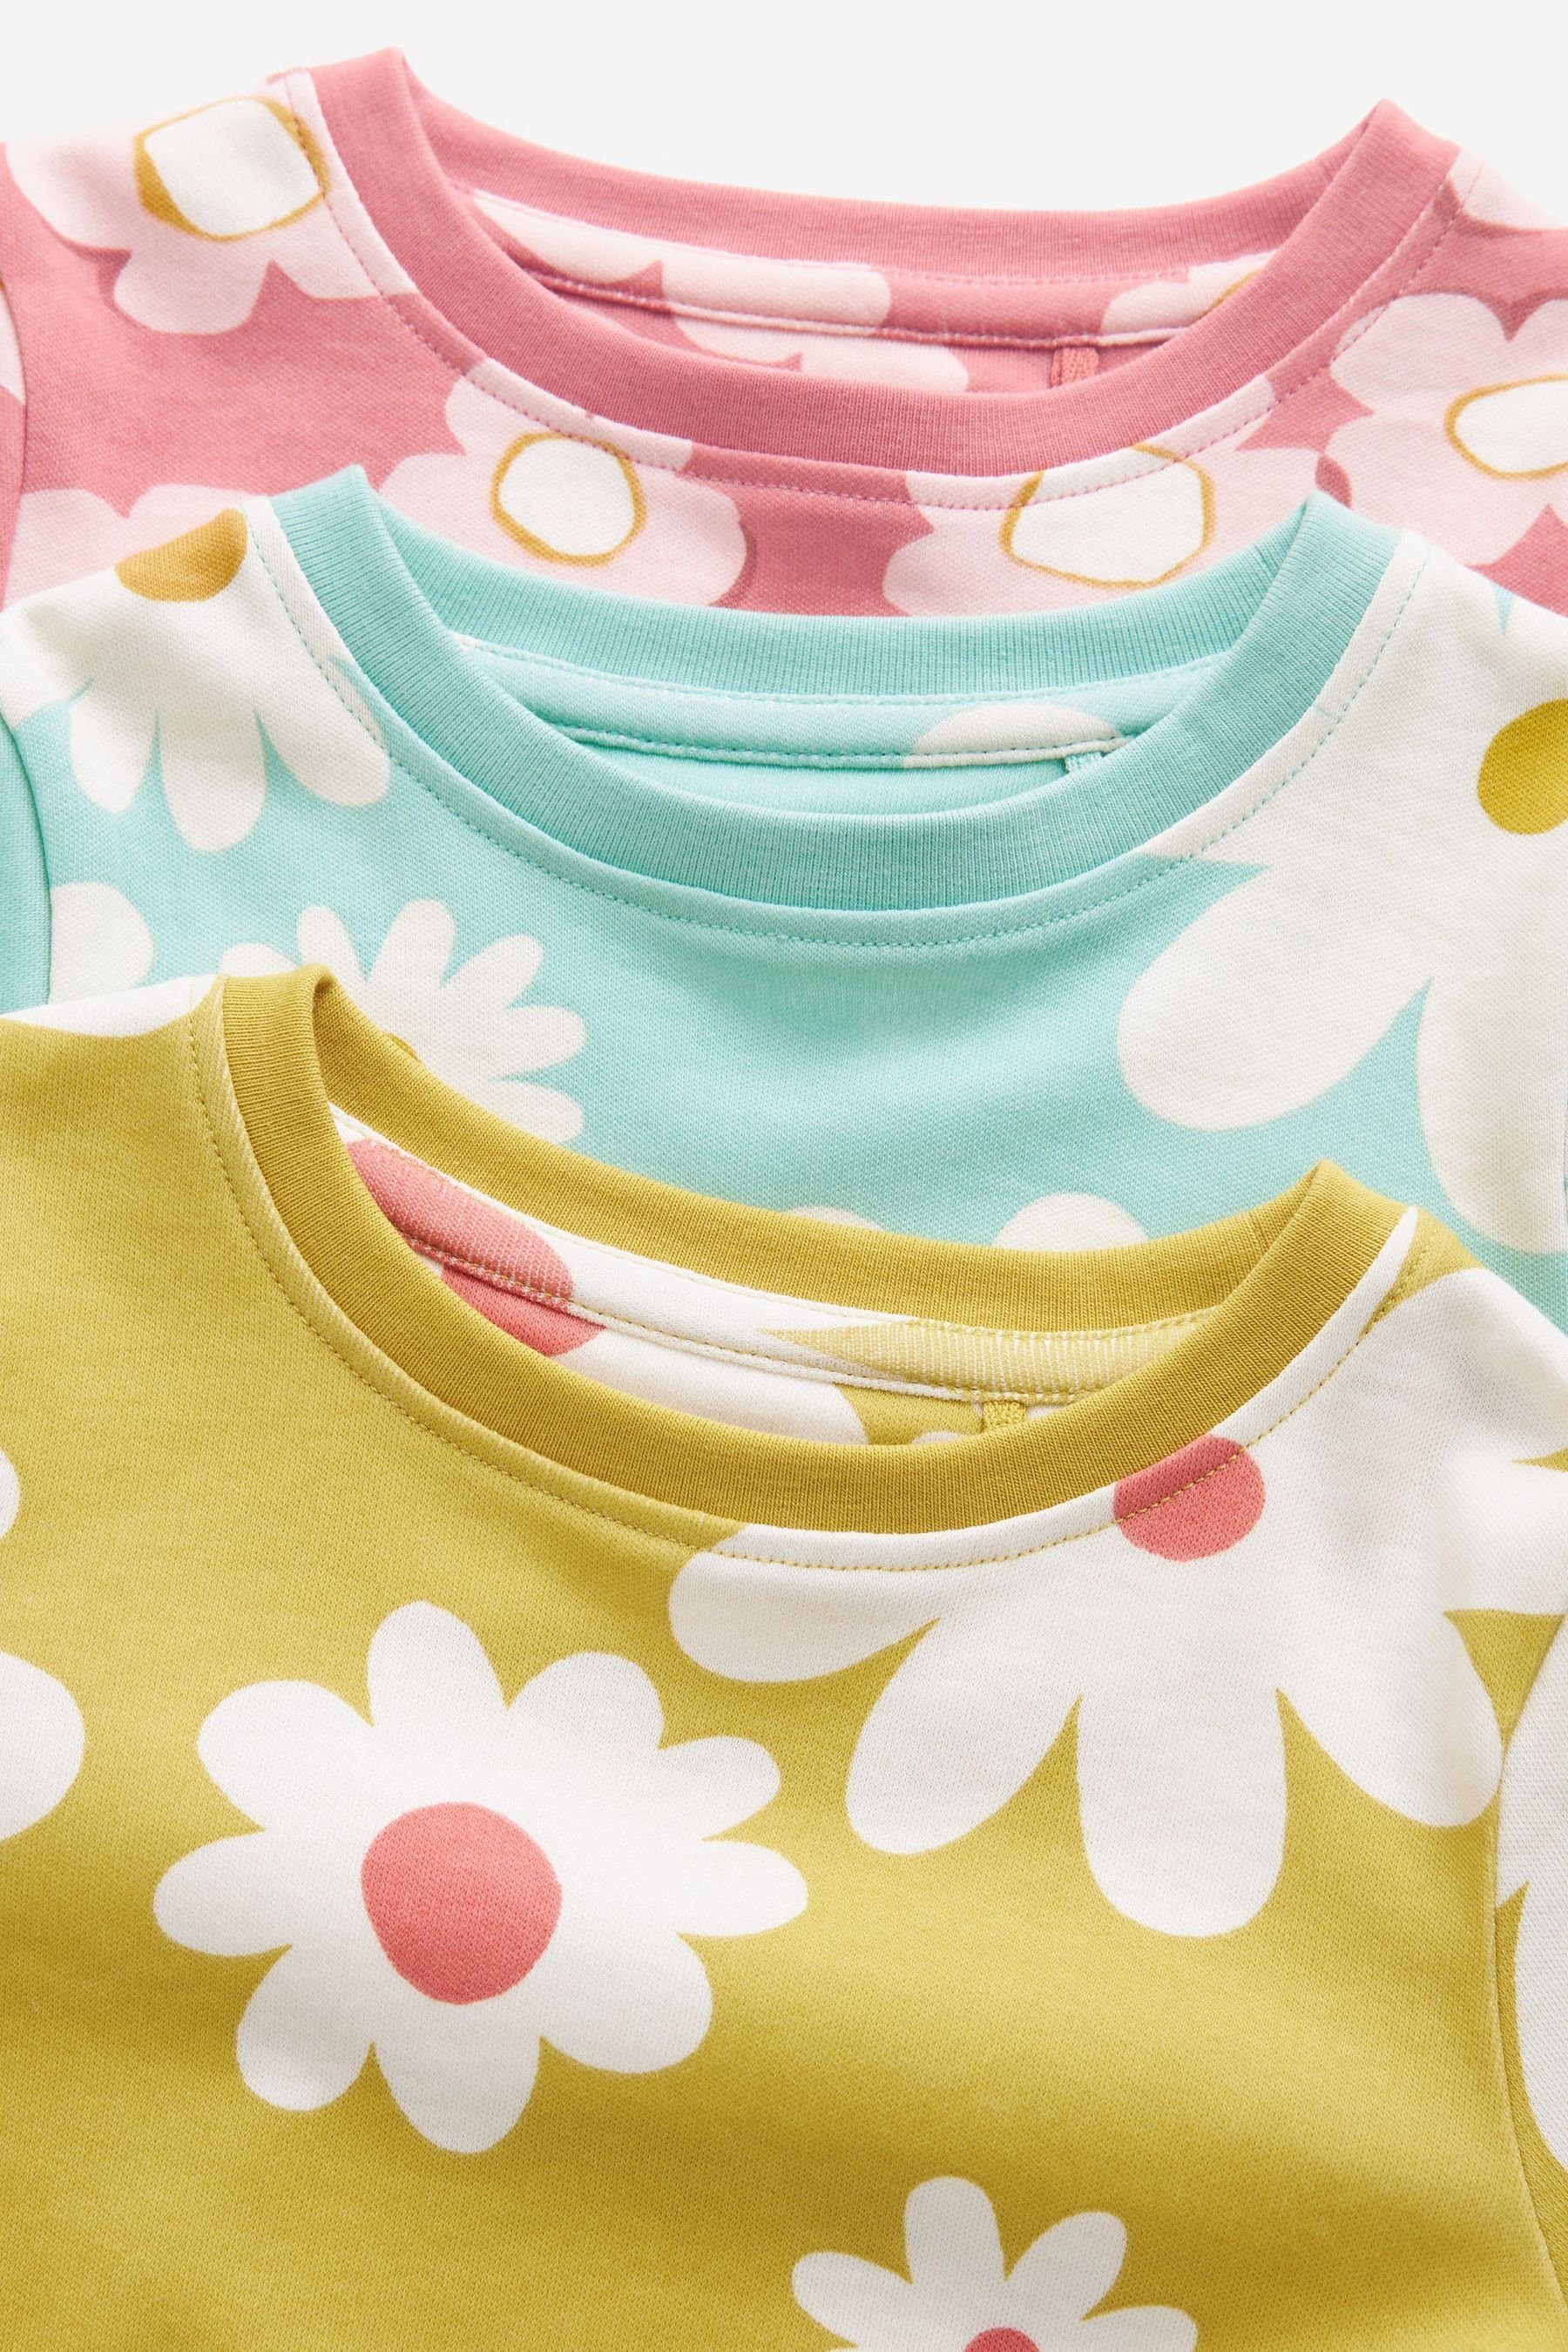 Next Pyjama Multicoloured tlg) (6 Floral Pyjamas im 3-Pack